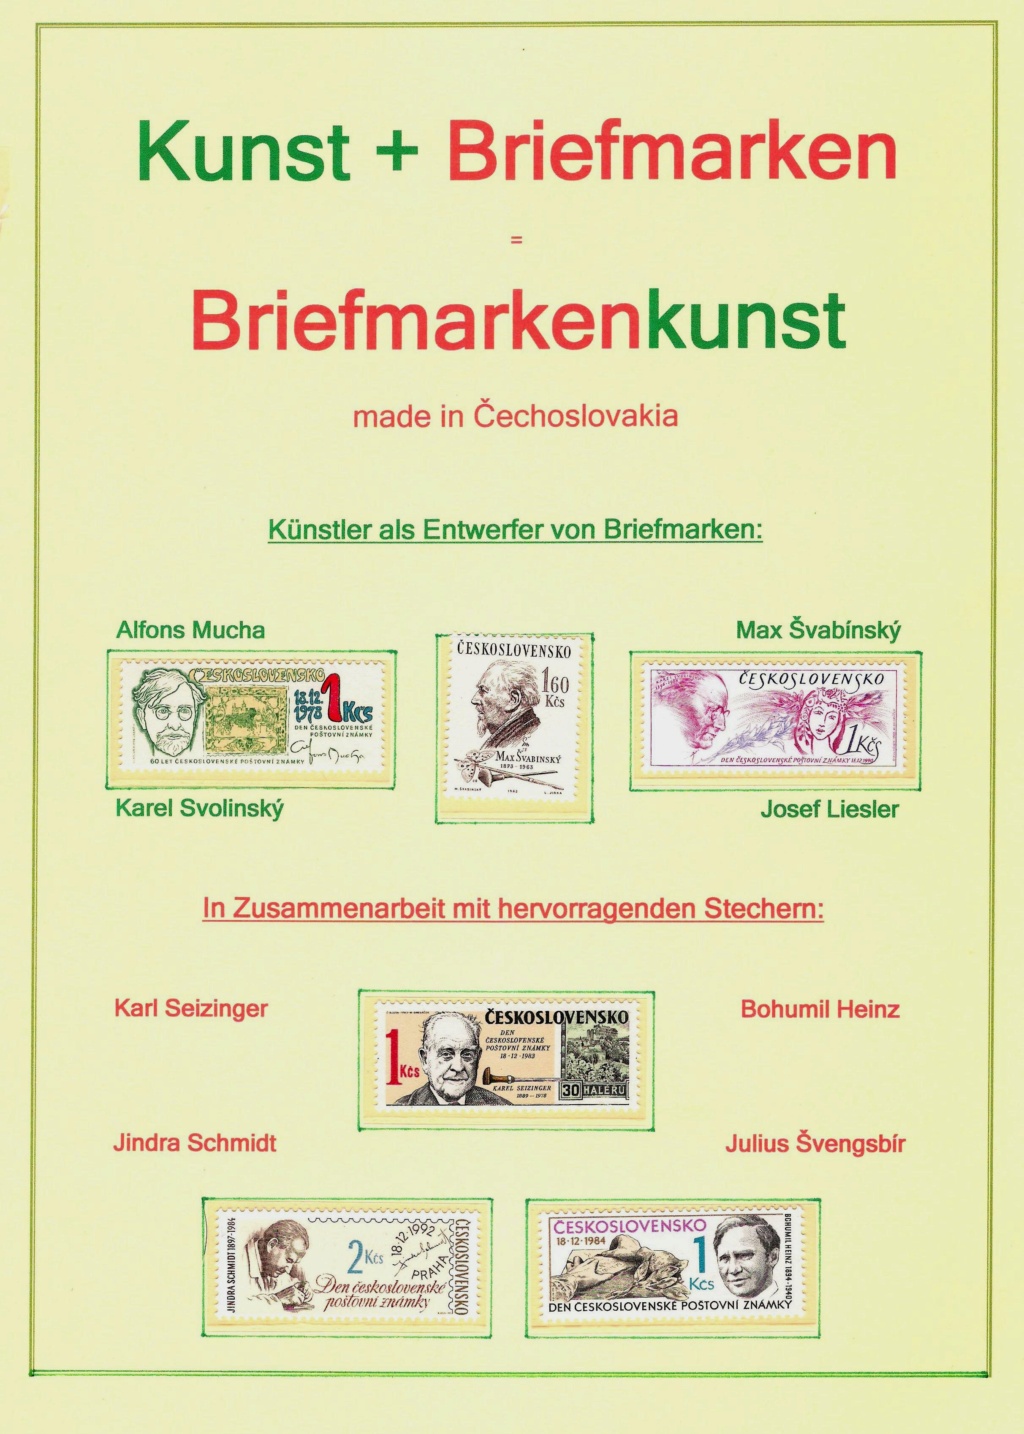 Briefmarkenkunst - made in Cechoslovakia Bmk112